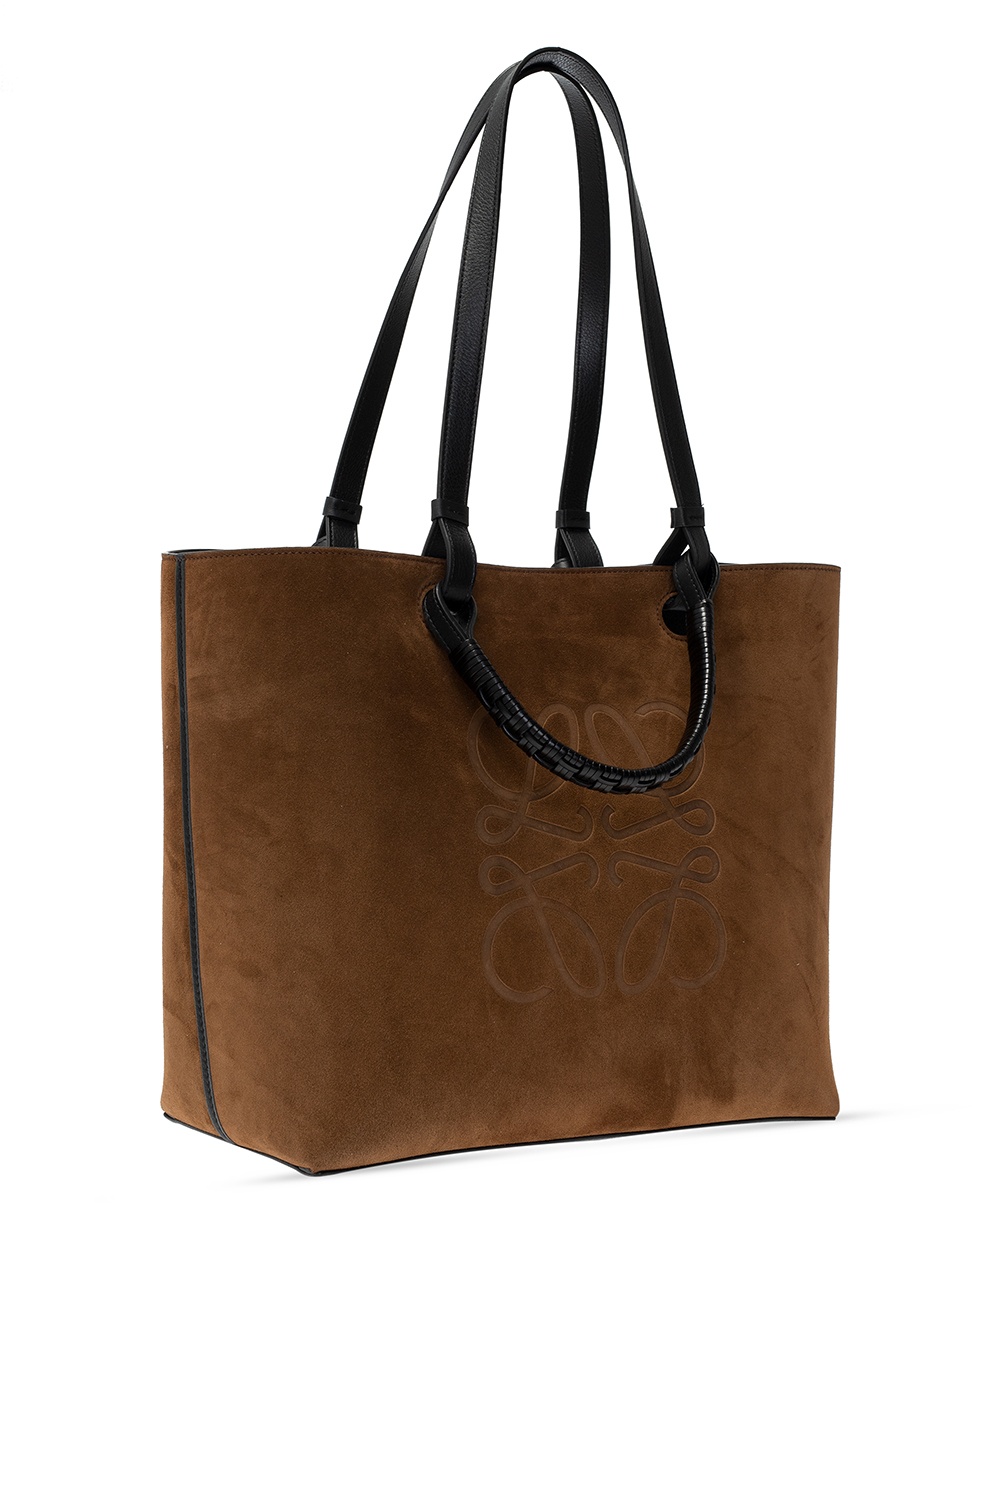 Loewe ‘Anagram’ tote bag